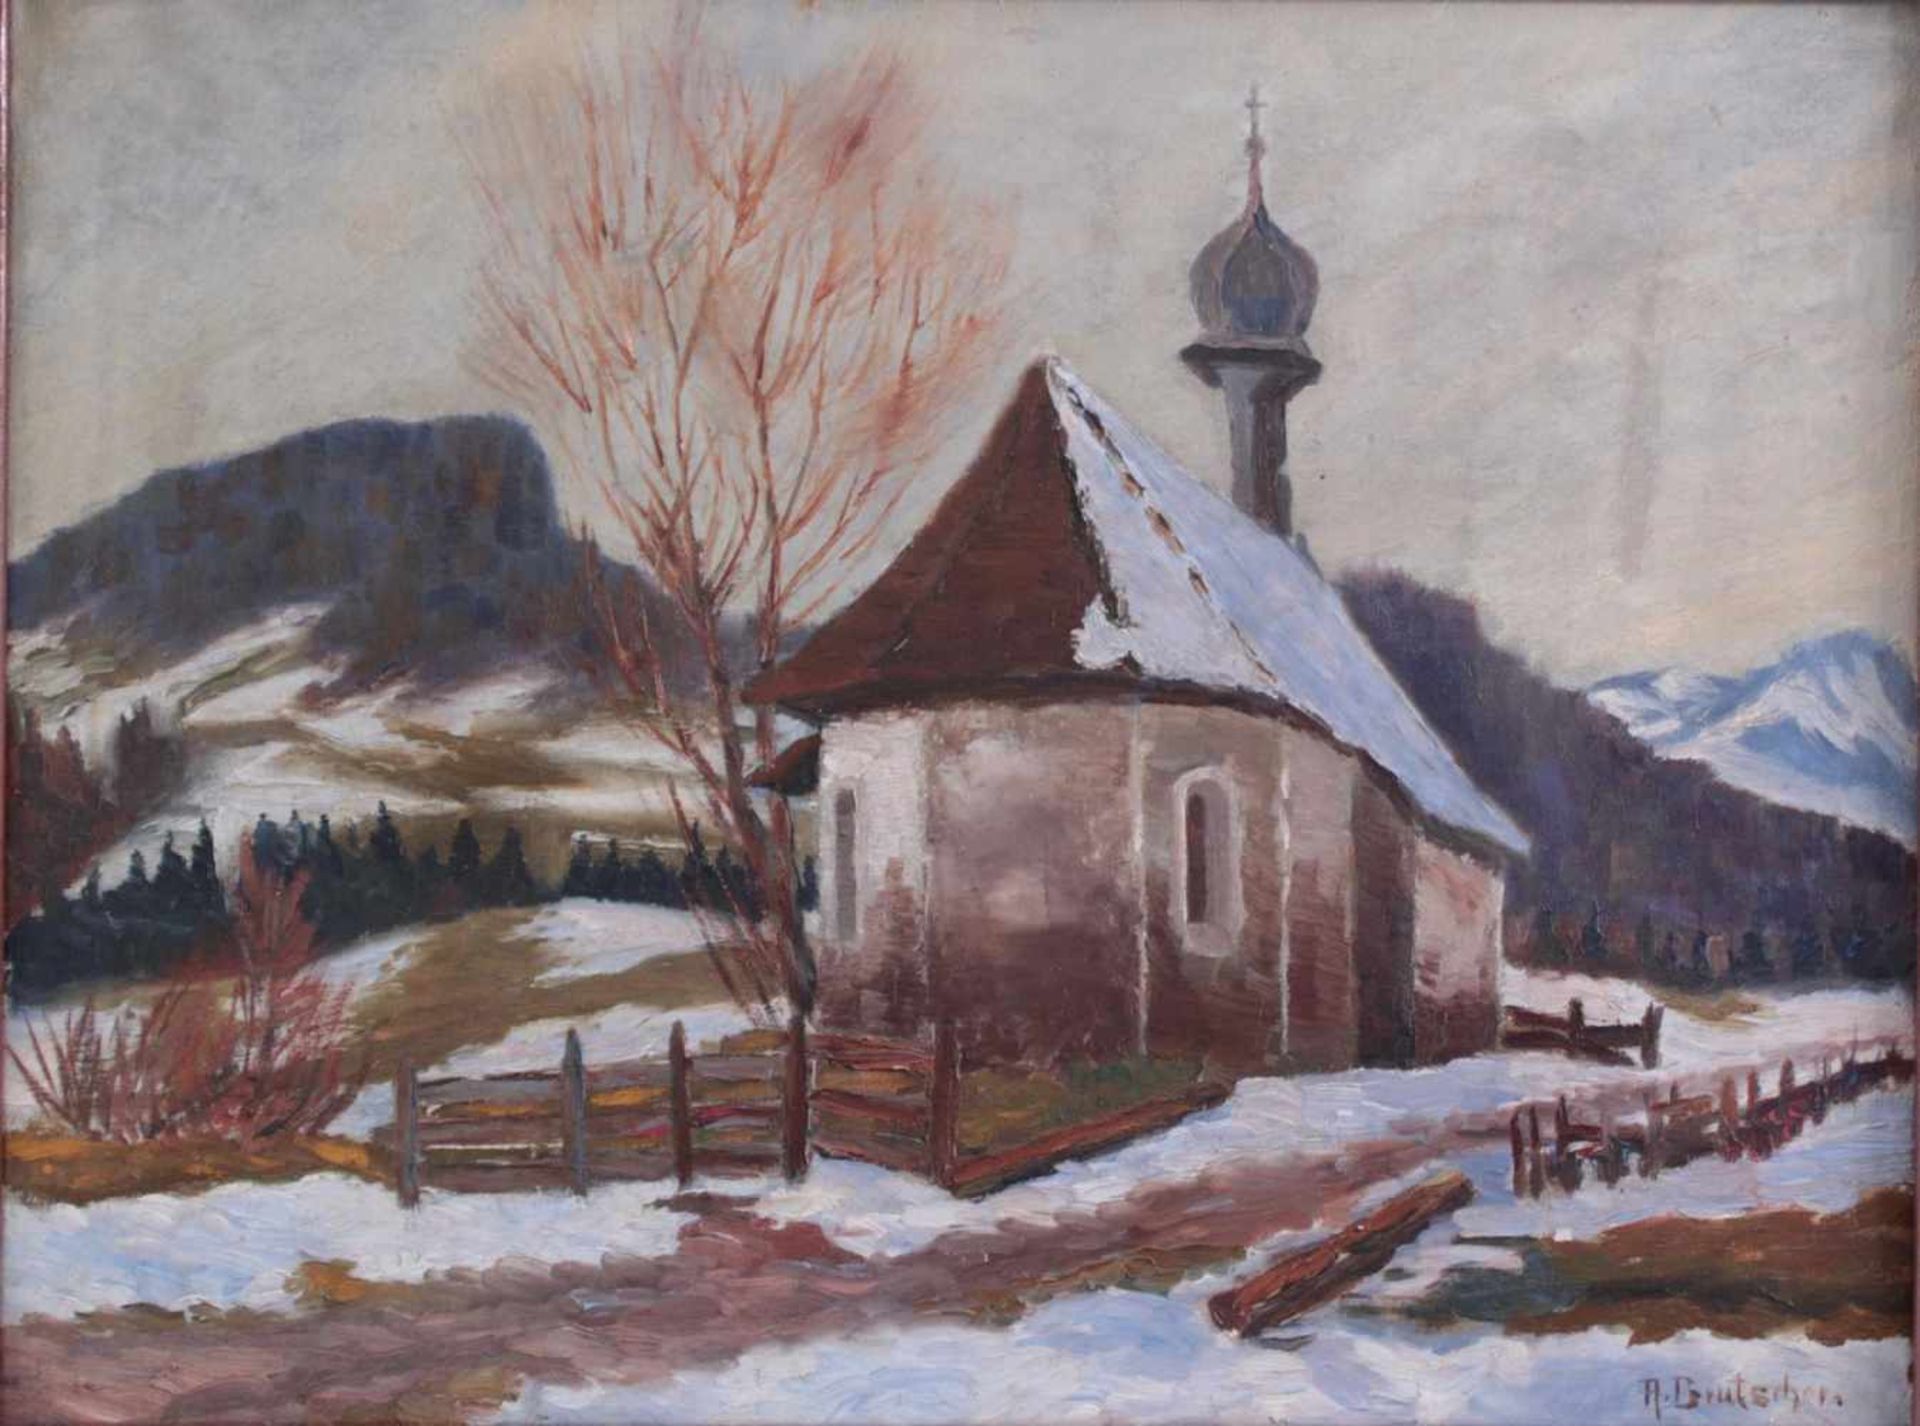 Brutscher, A., Künstler des 20. Jh. tätig in Wangen, "Kapelle im Gebirge"Öl auf Leinwand gemalt, - Image 2 of 5